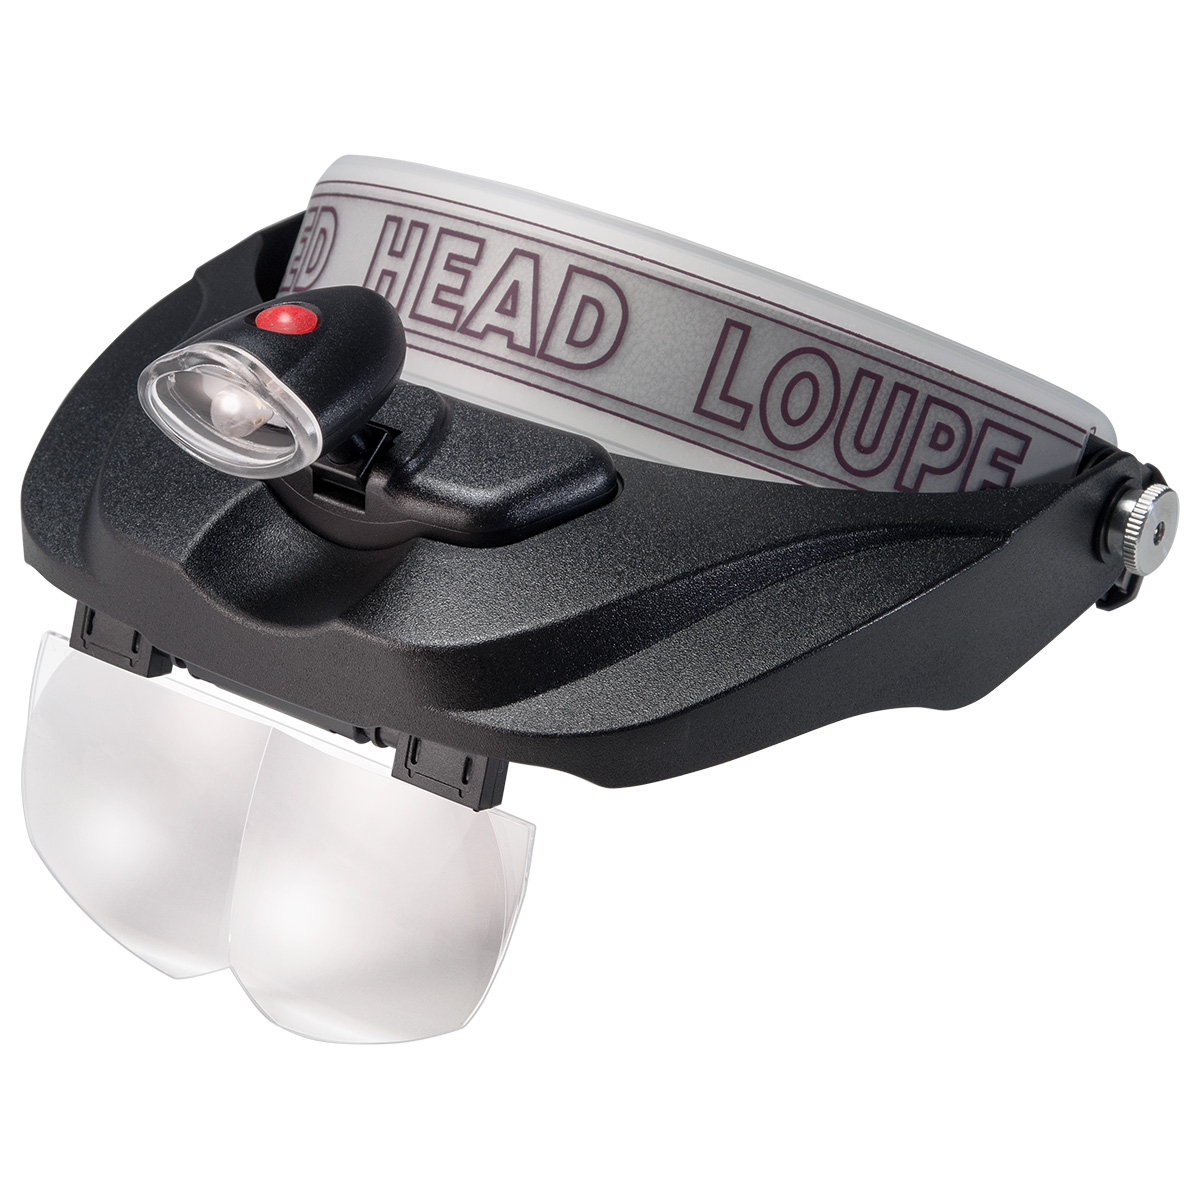 Kopfbandlupe, LED Beleuchtung,  4 Linsen 1,2x, 1,8x, 2,5x, 3,5x, inkl. 2 Batterien AAA